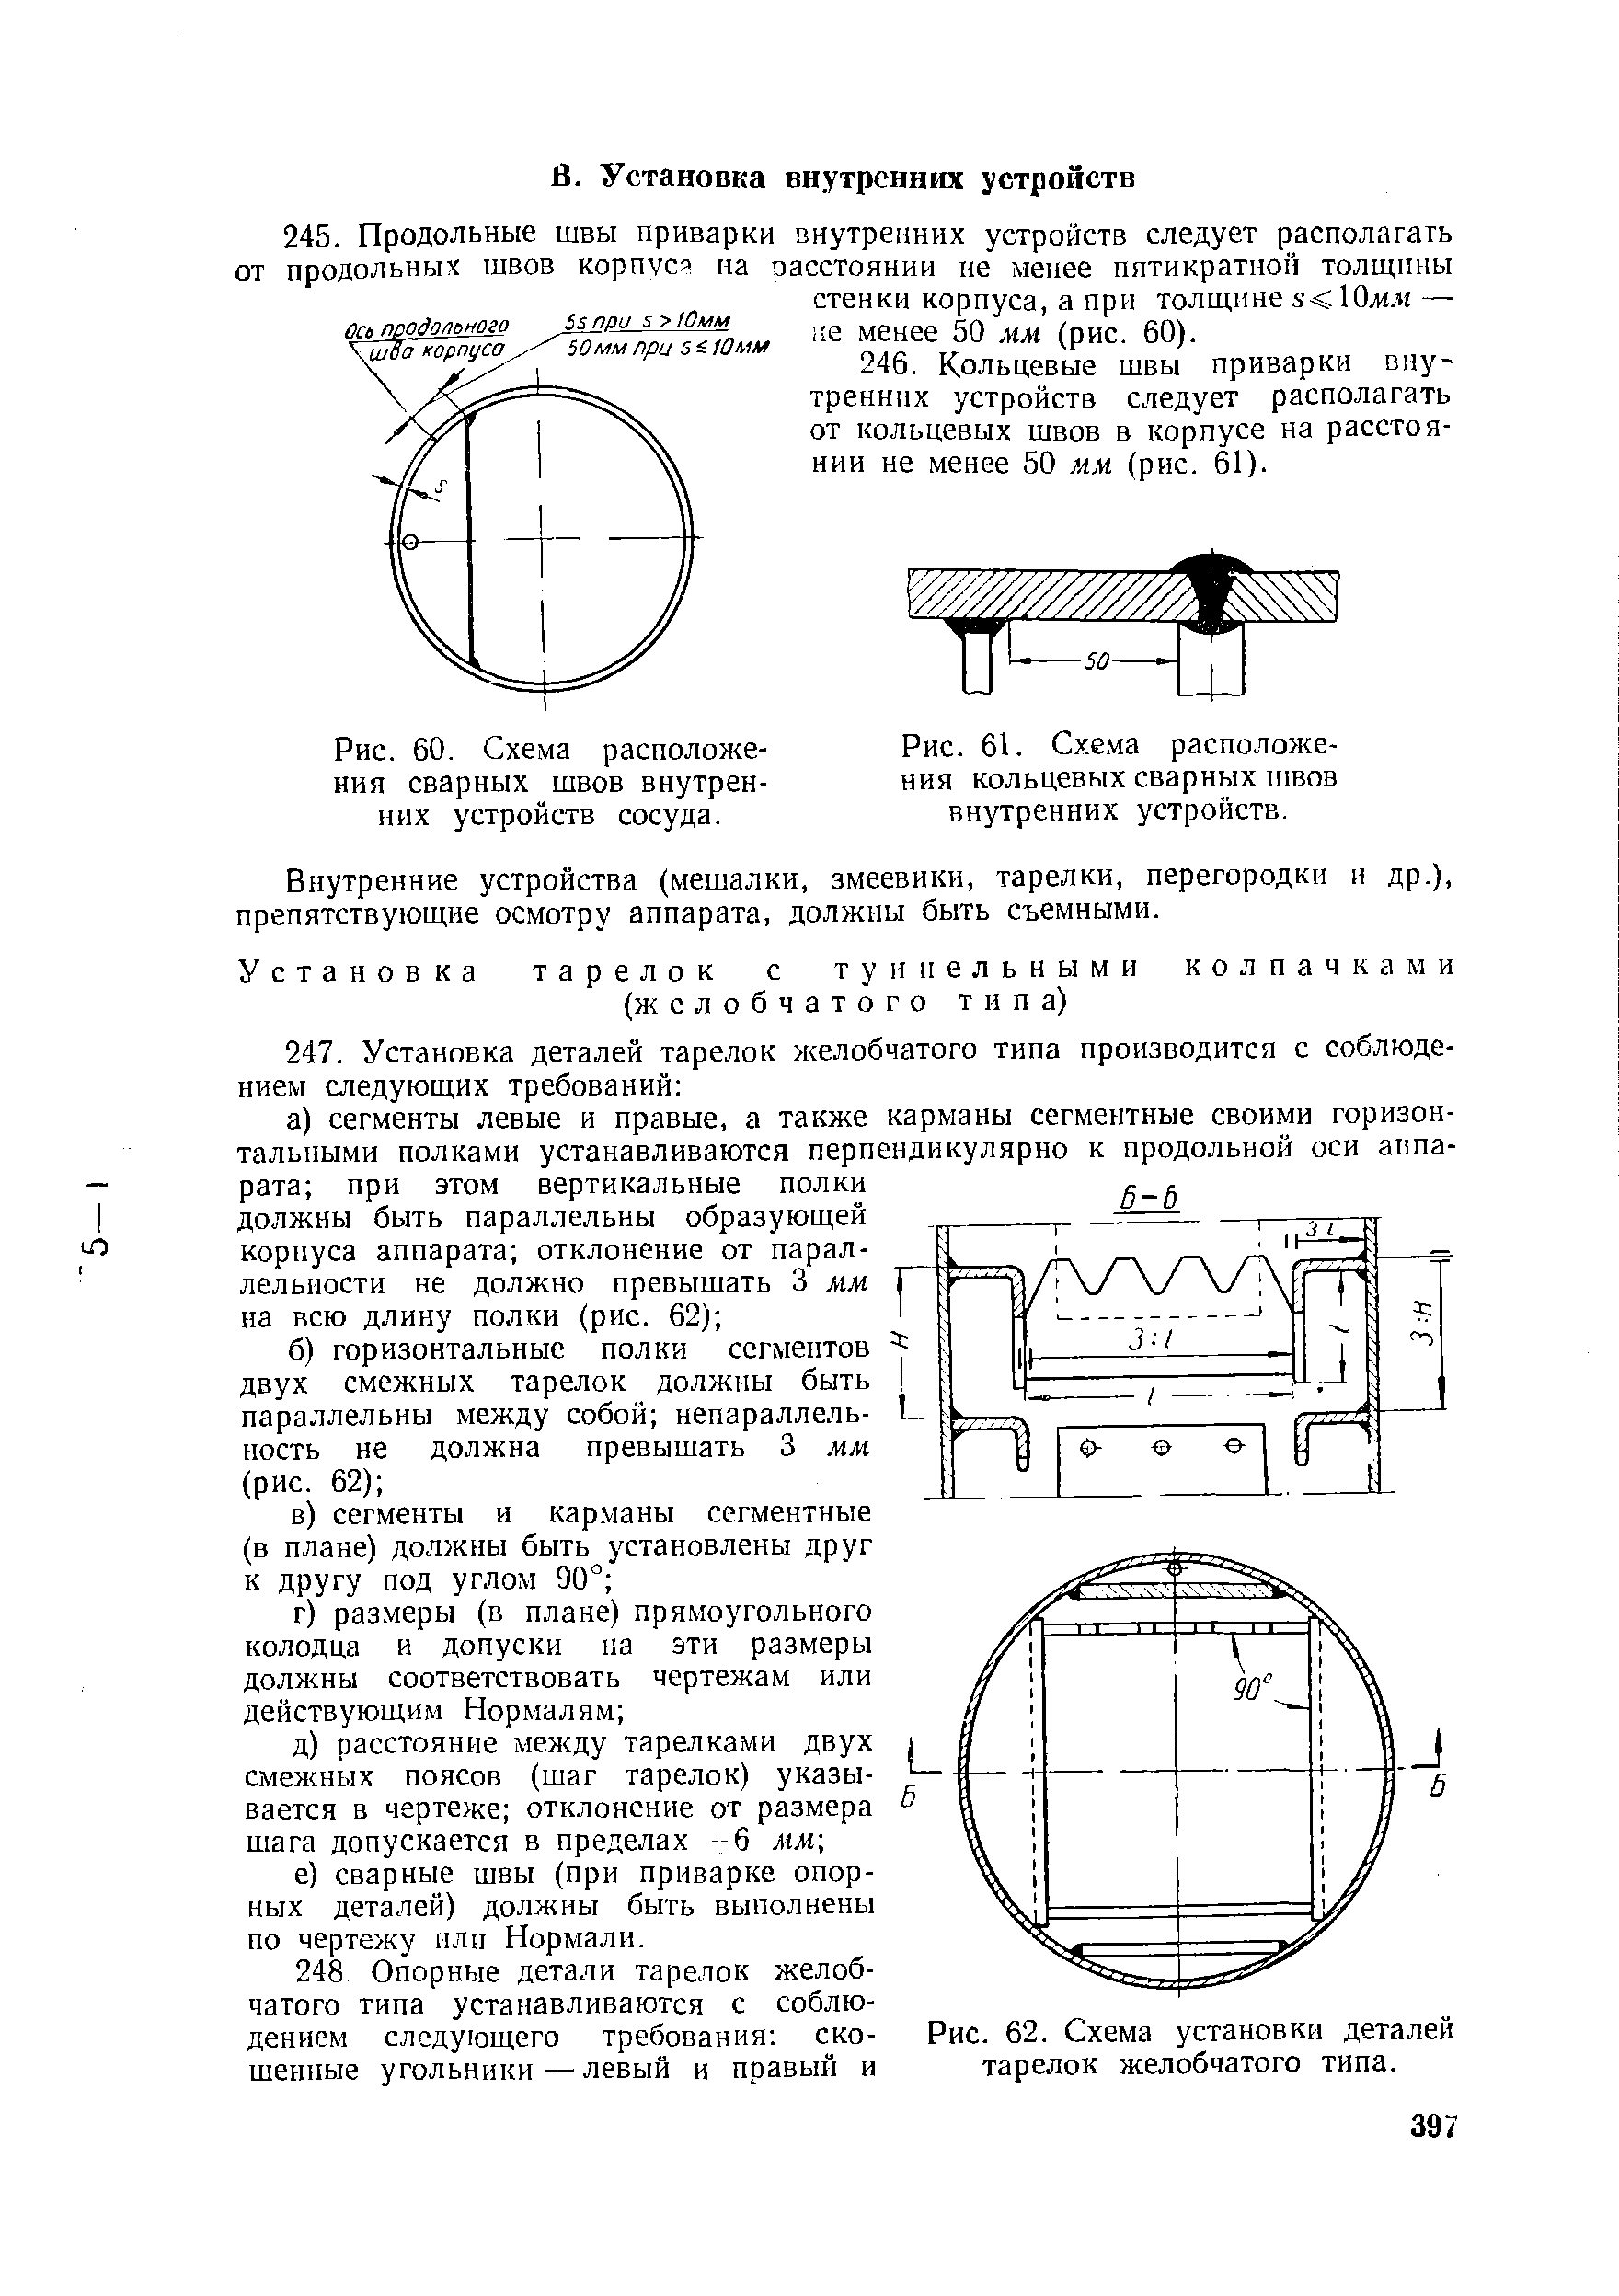 Рис. 62. Схема установки деталей тарелок желобчатого типа.
